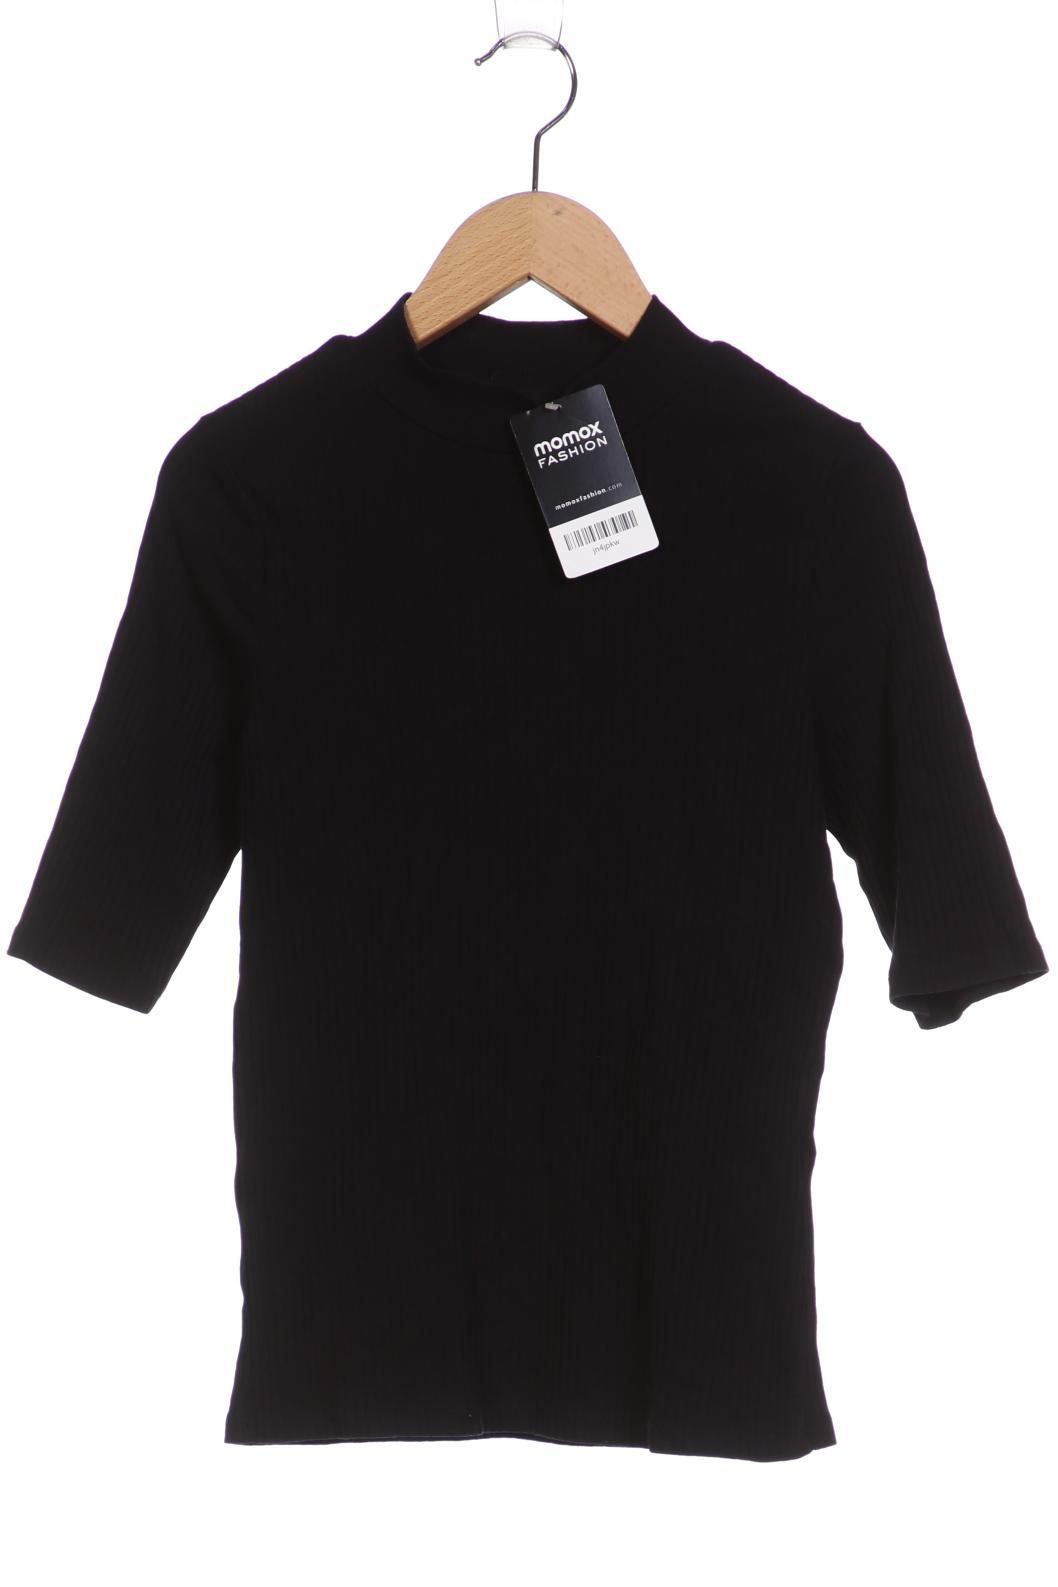 Monki Damen T-Shirt, schwarz, Gr. 36 von Monki